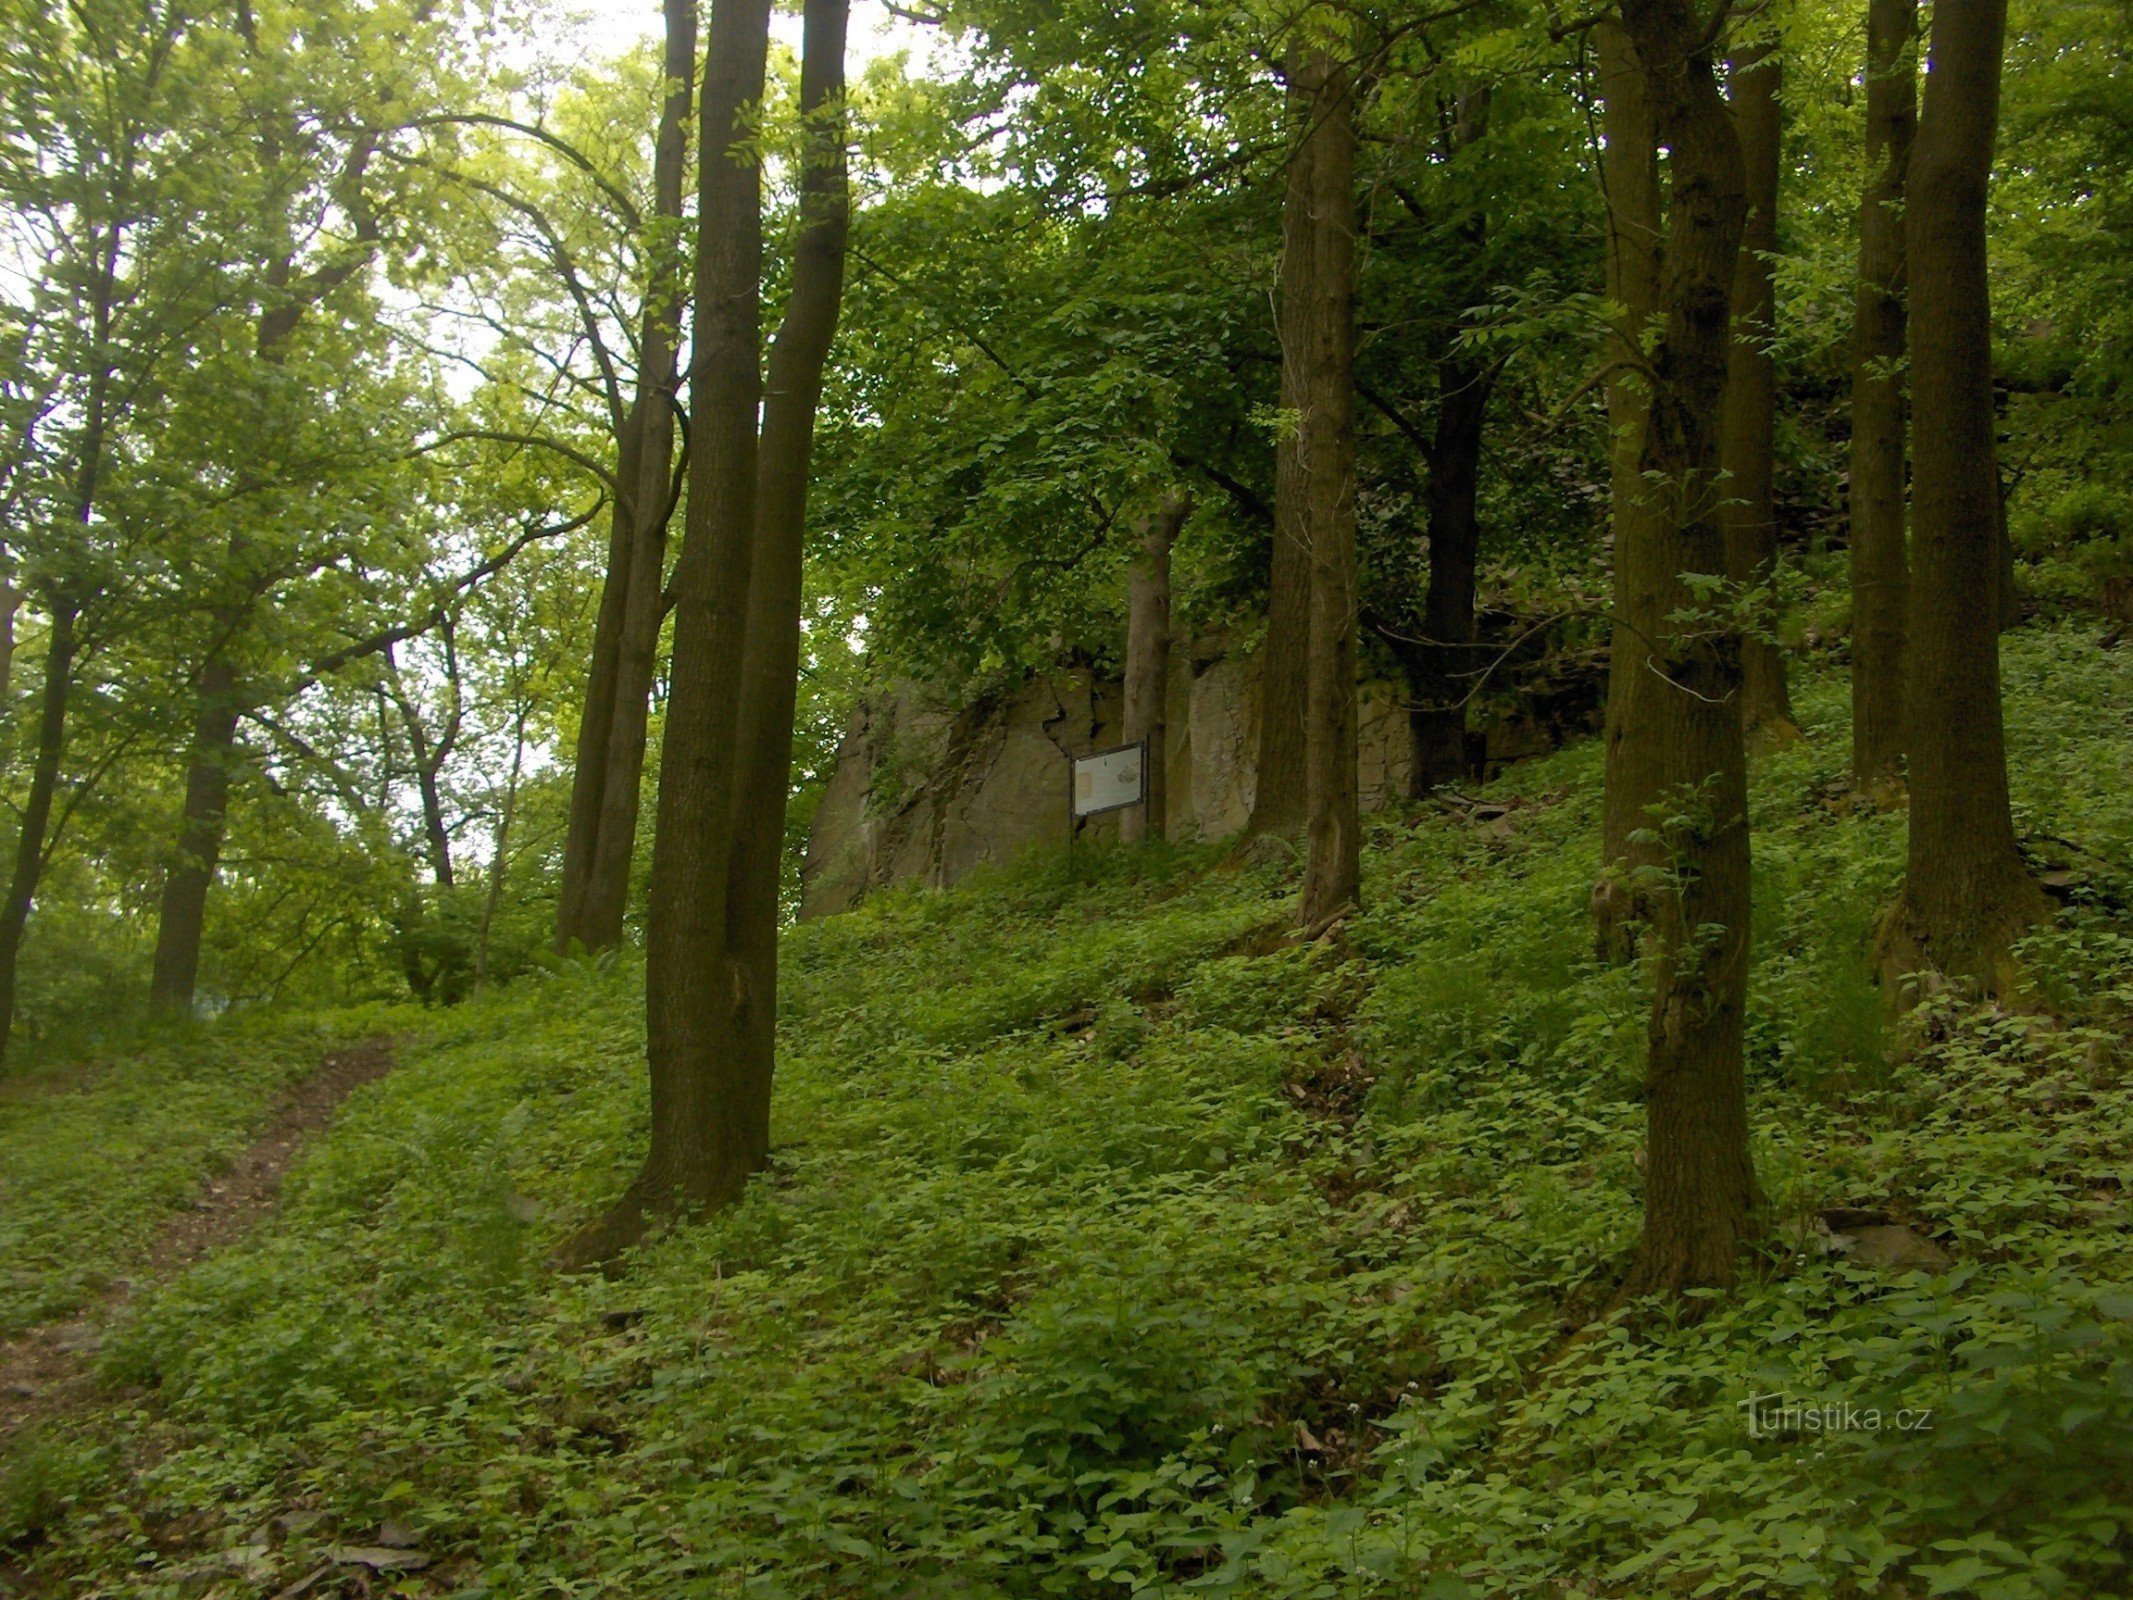 Τα ερείπια του κάστρου Litýš